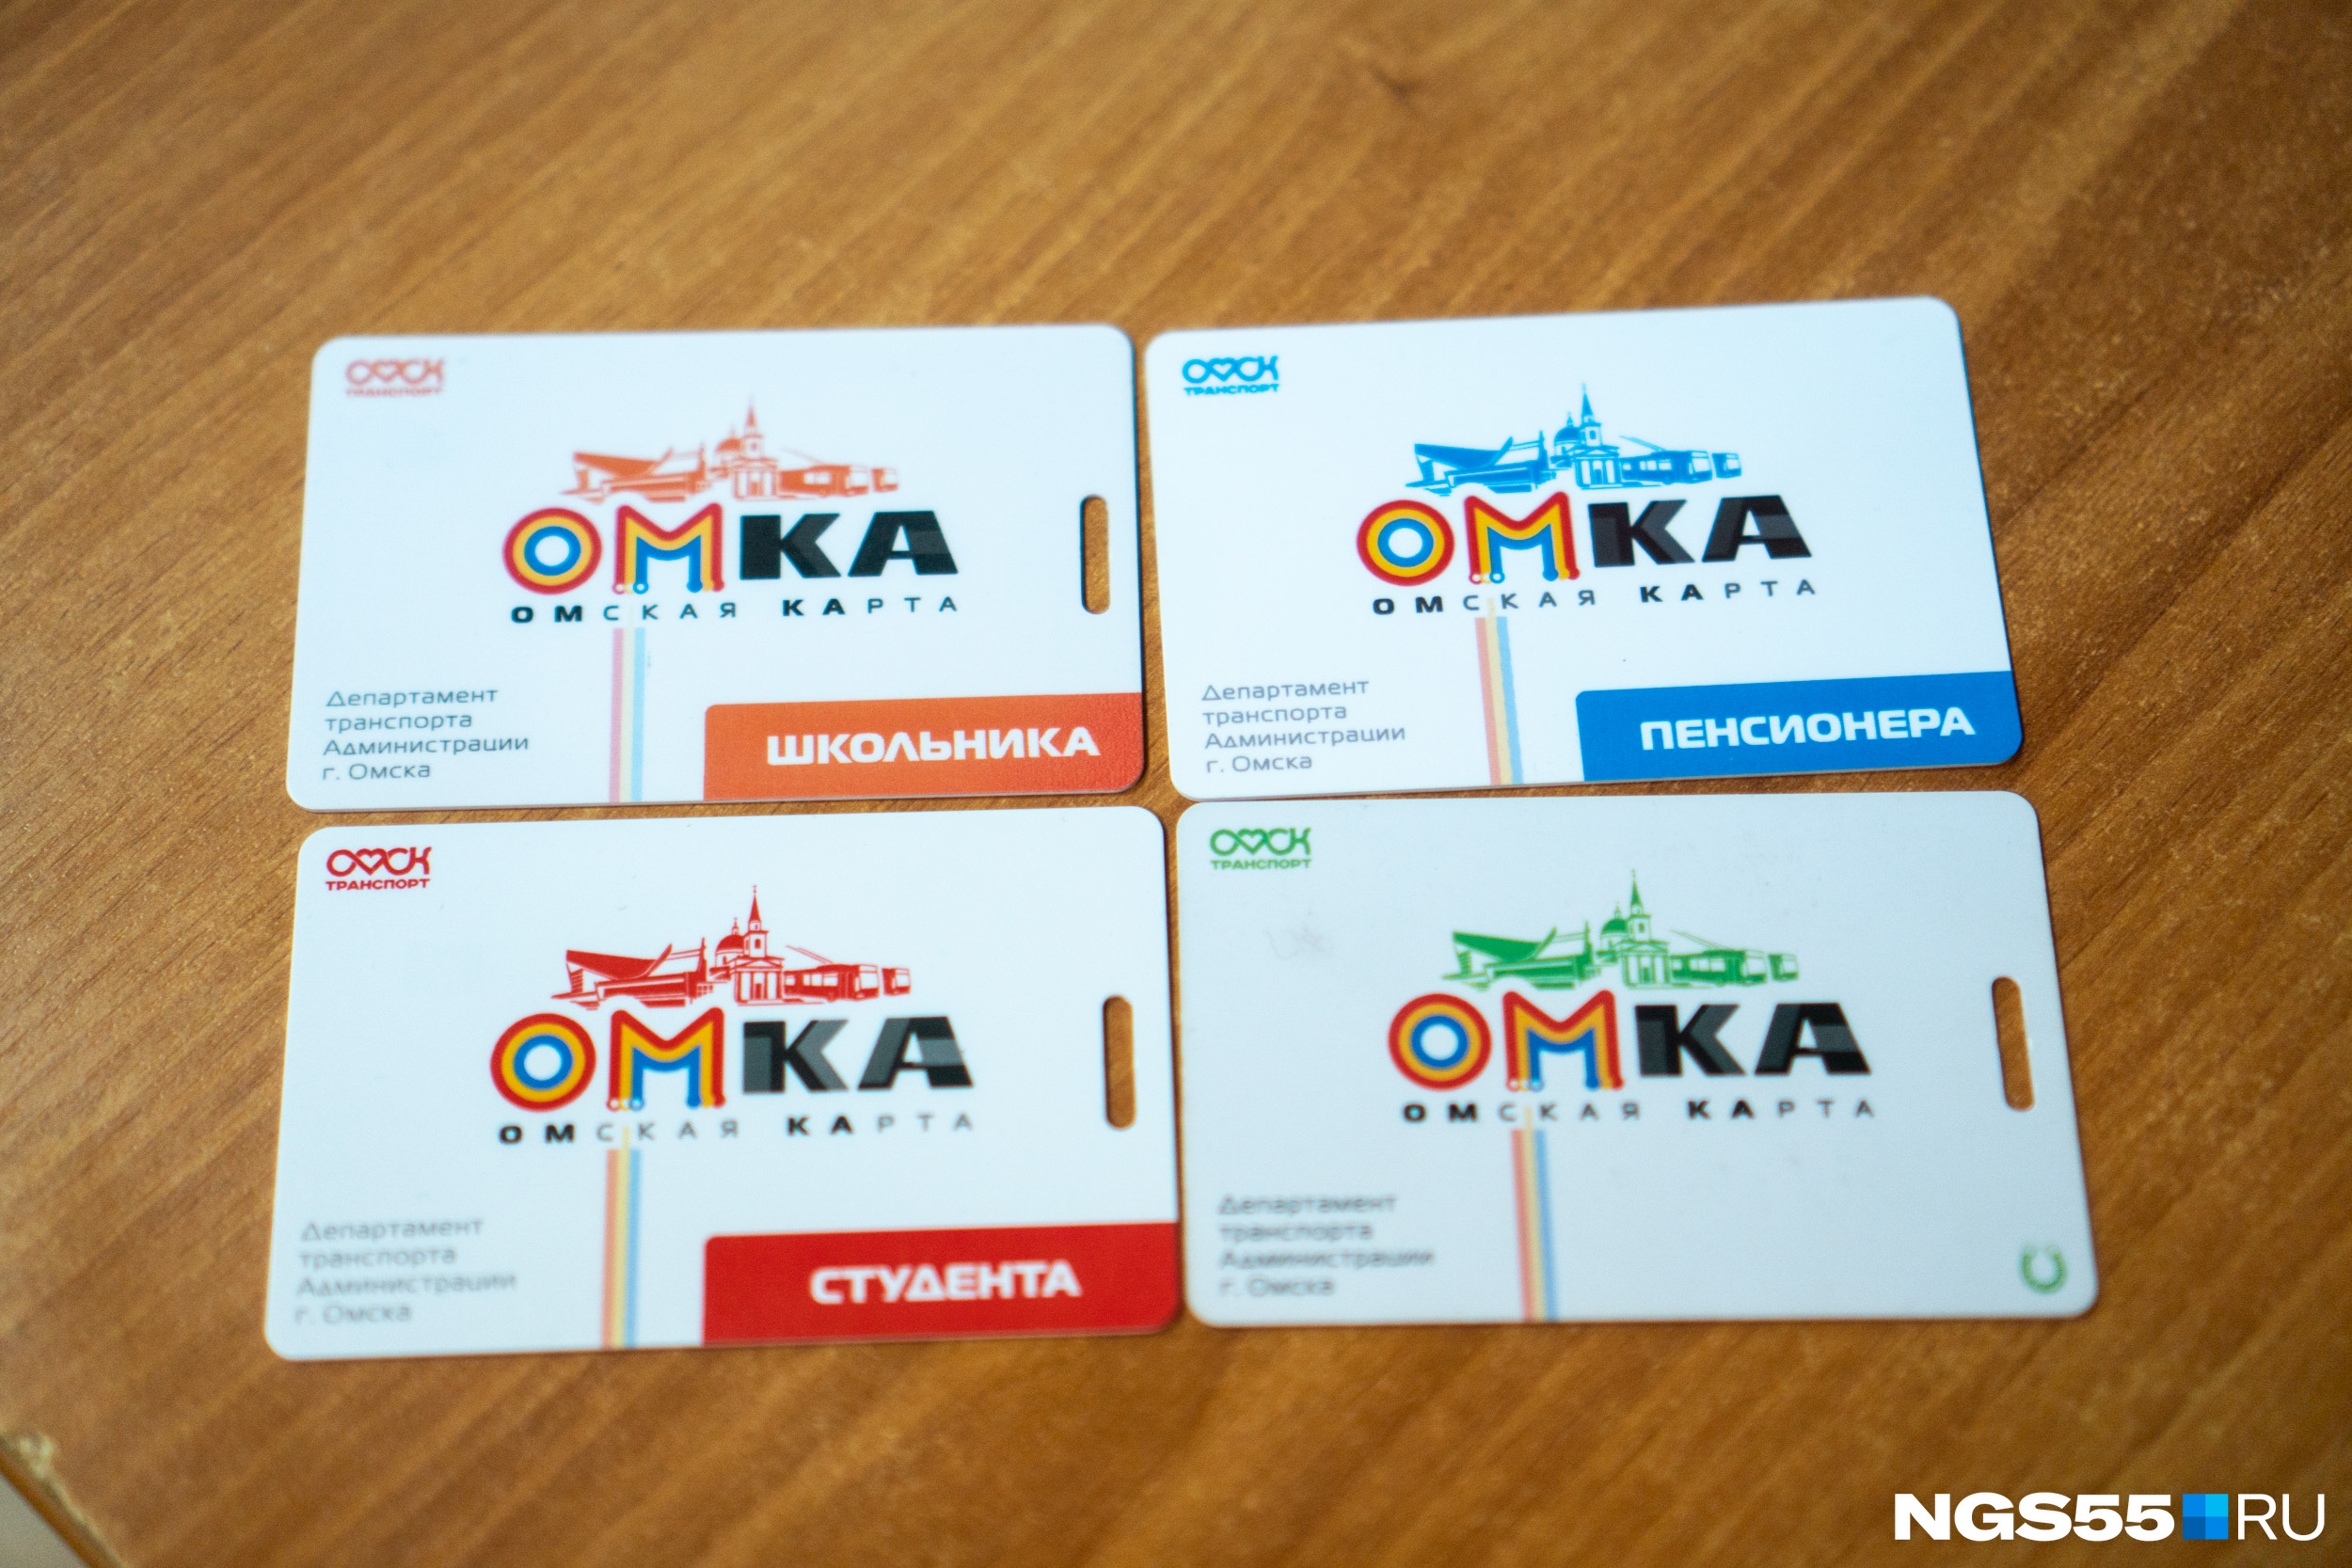 В Омске планируют закупить 20 тысяч карт «Омка» (больше всего — для студентов)